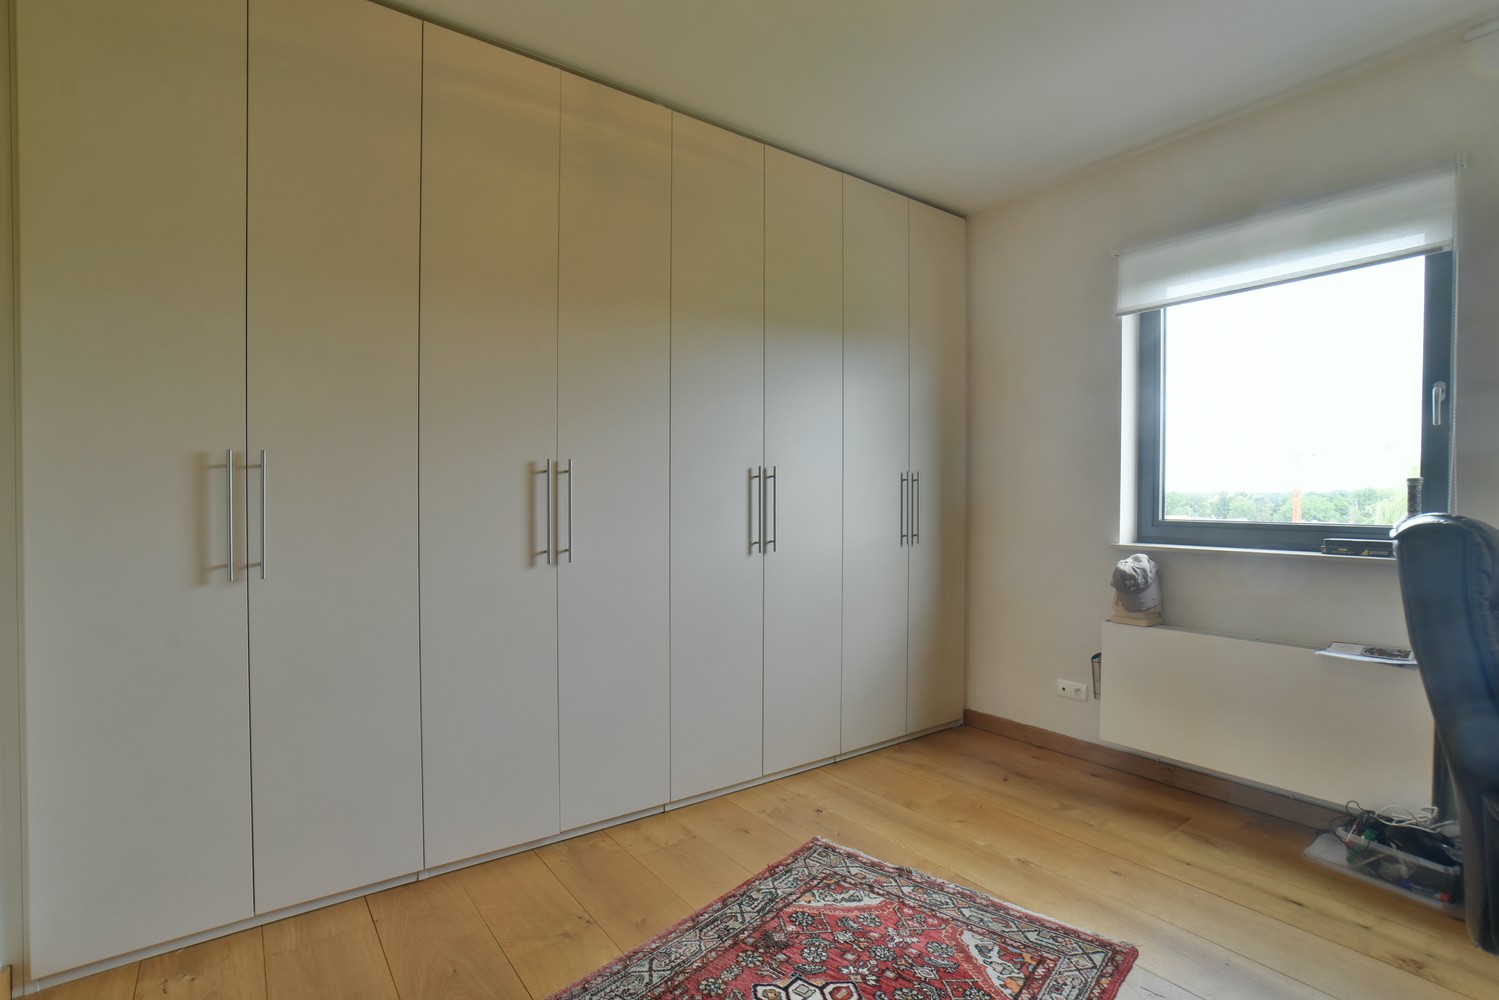 Klassevol penthouse van 318 m² met 4 slaapkamers, 2 badkamers en 2 garages, rustig gelegen in het centrum van Lanaken foto 14